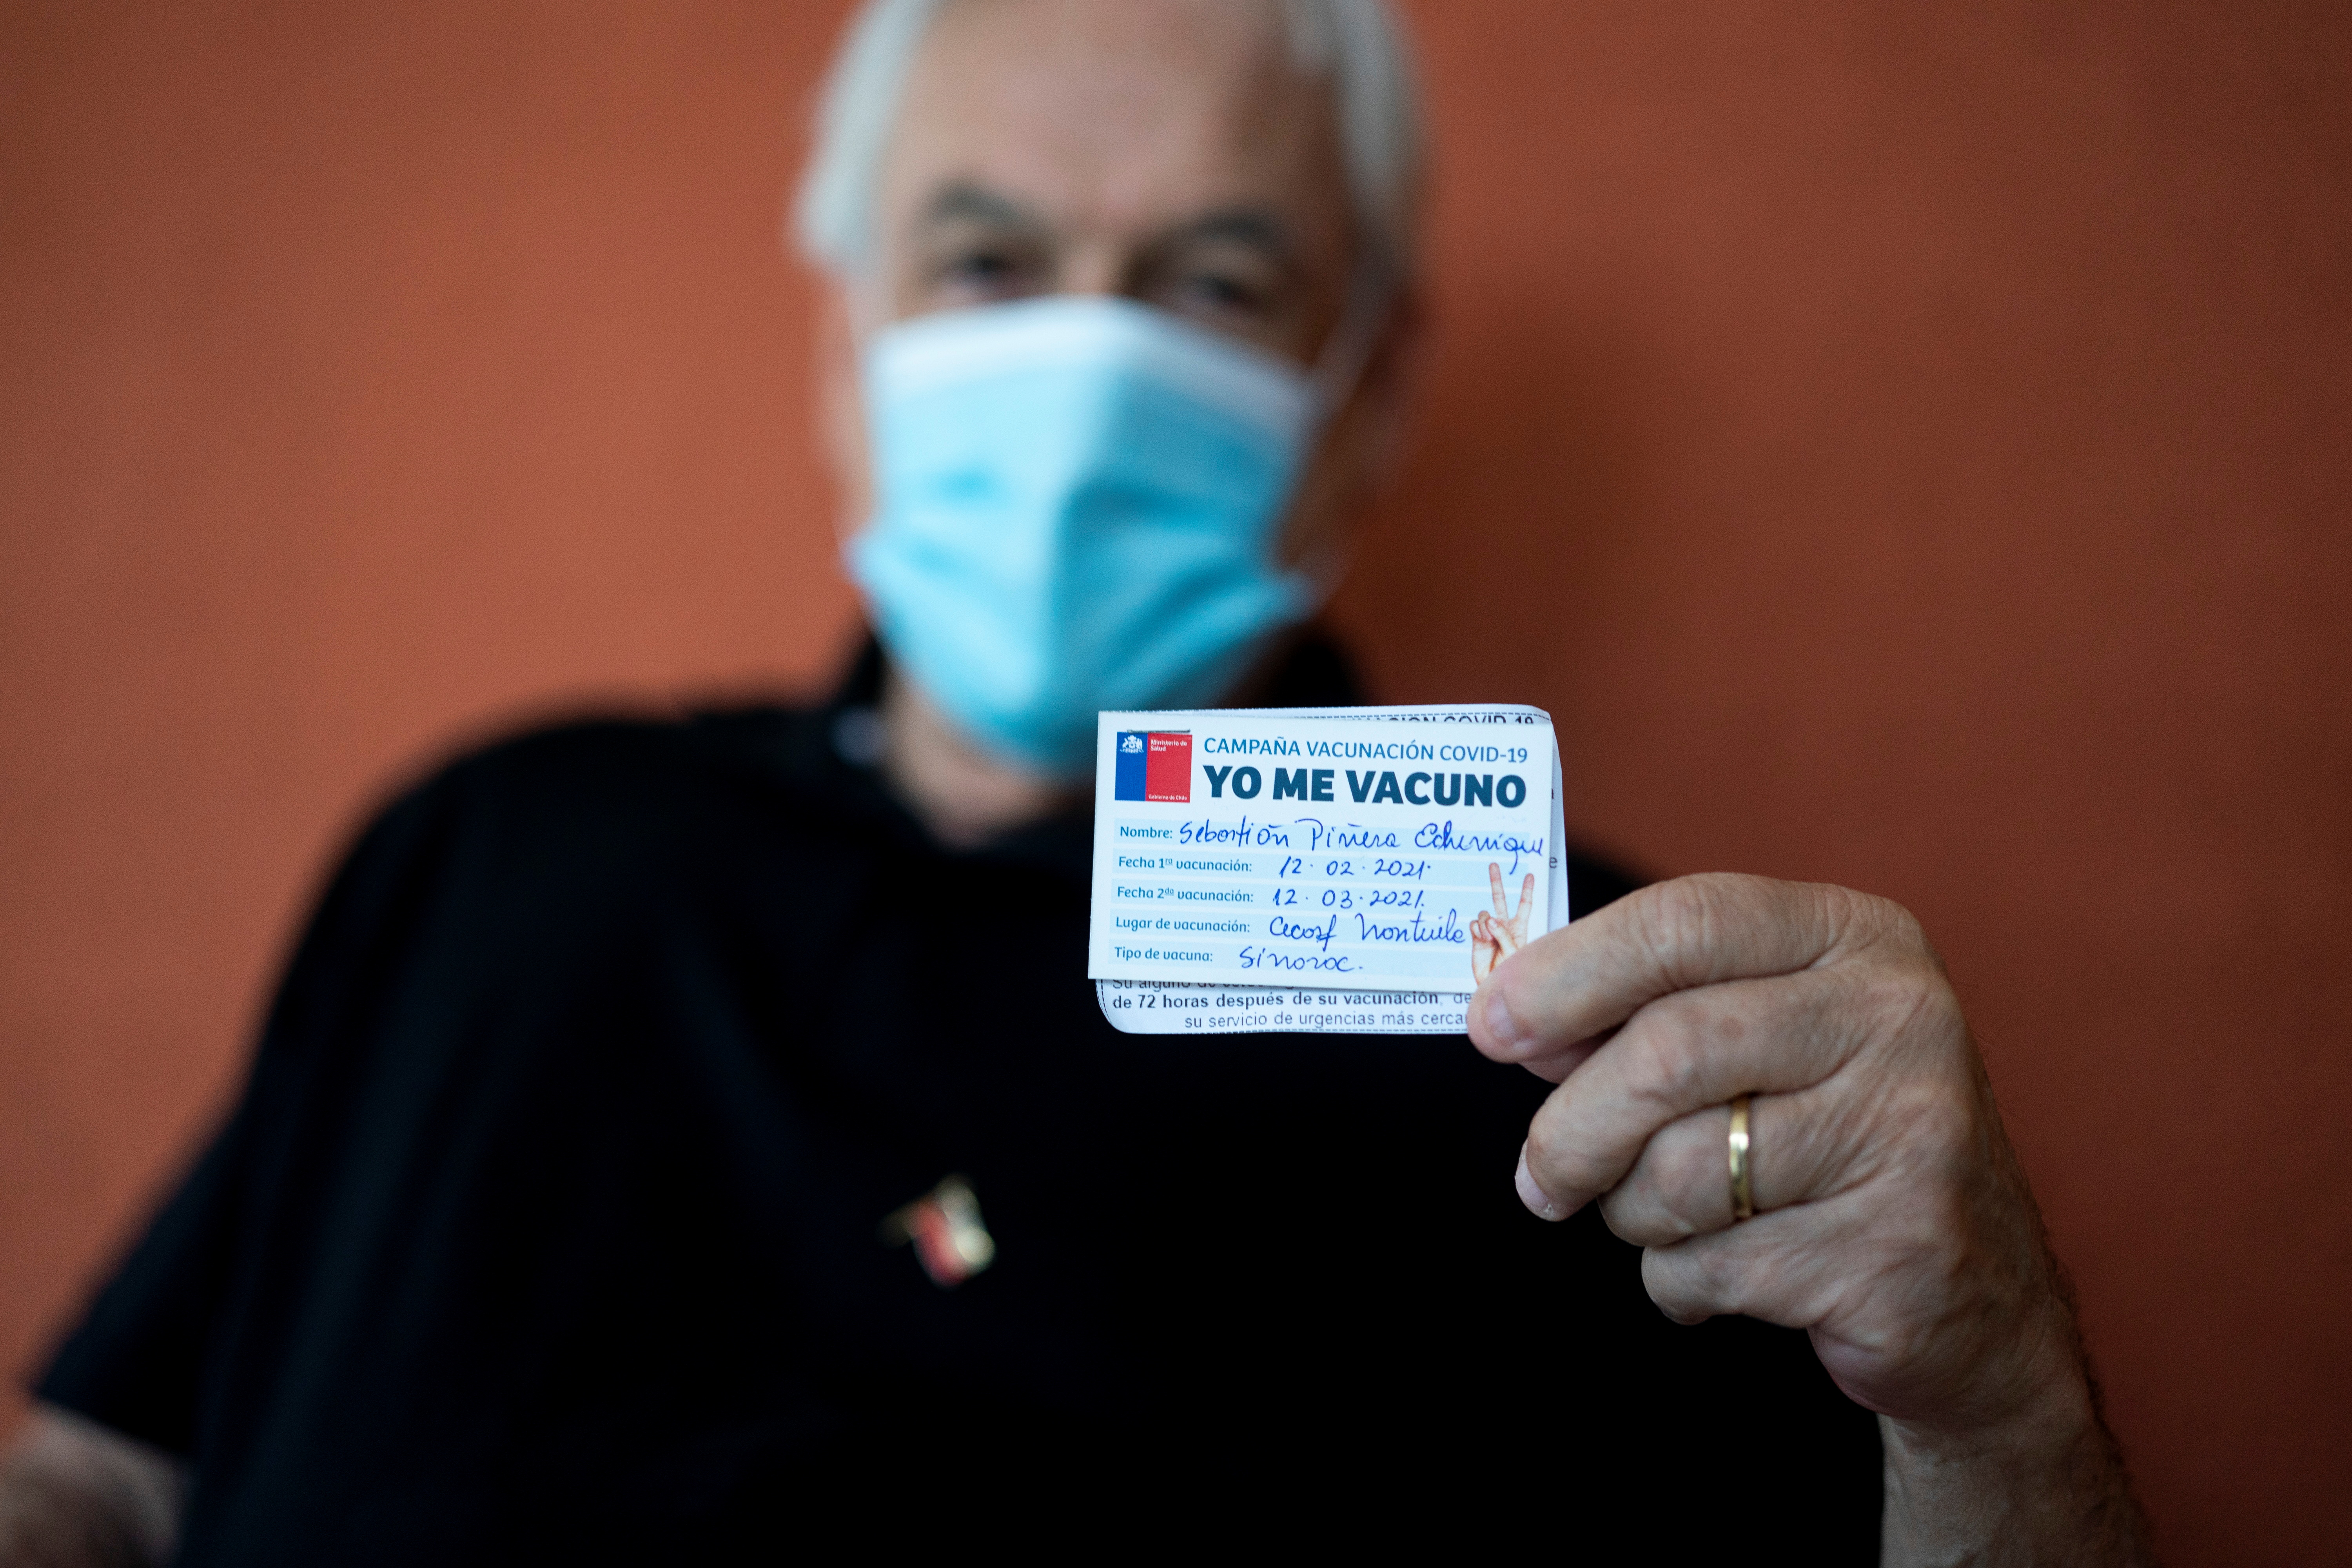 El presidente chileno Sebastián Piñera se vacunó e viernes pasado, respetando el calendario